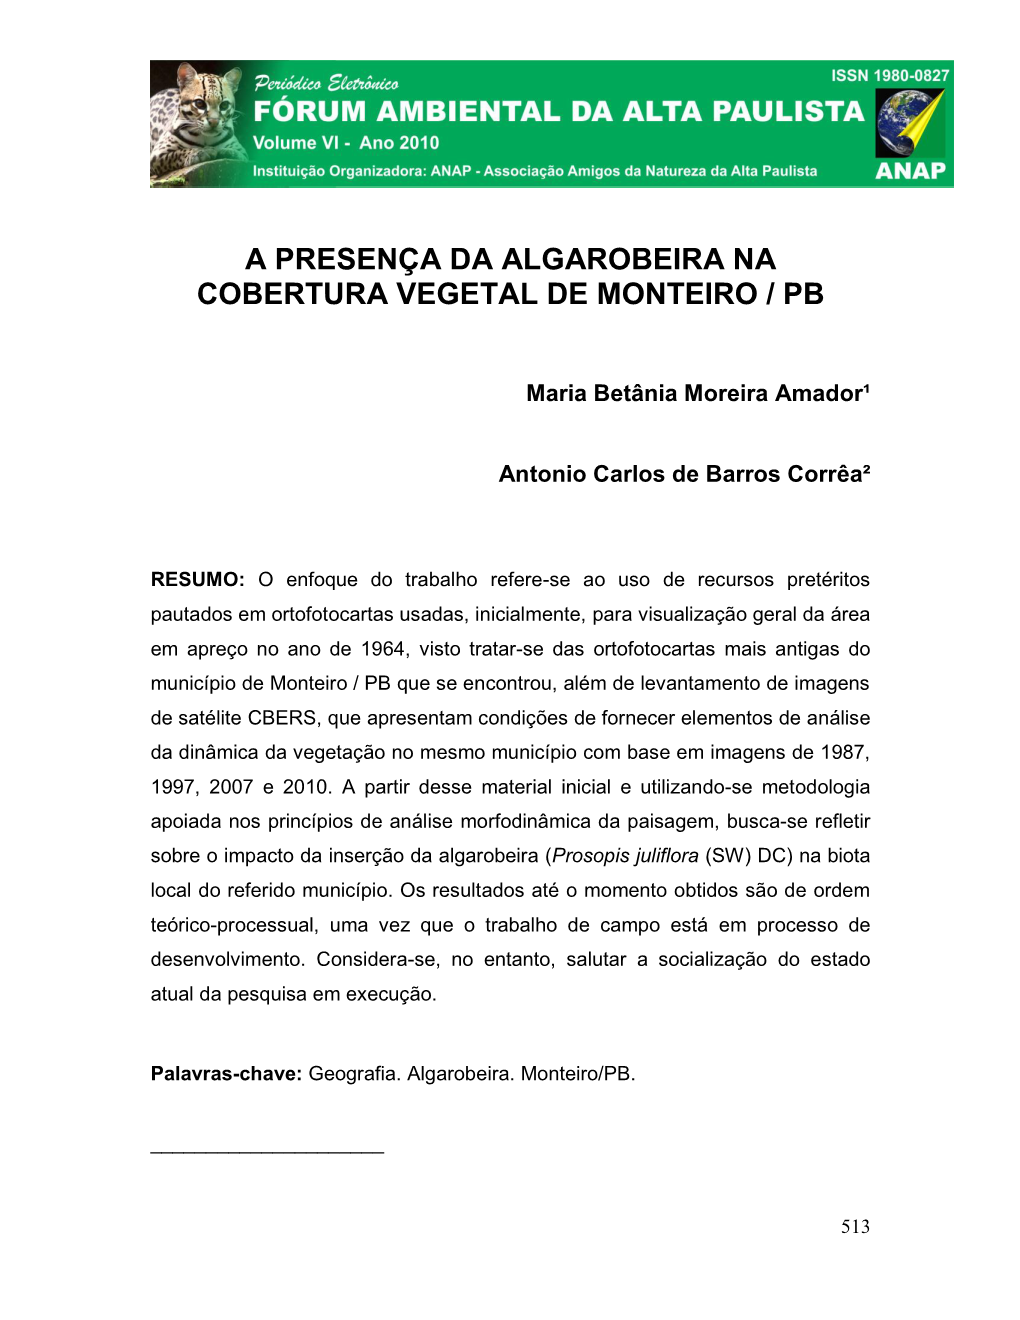 A Presença Da Algarobeira Na Cobertura Vegetal De Monteiro / Pb